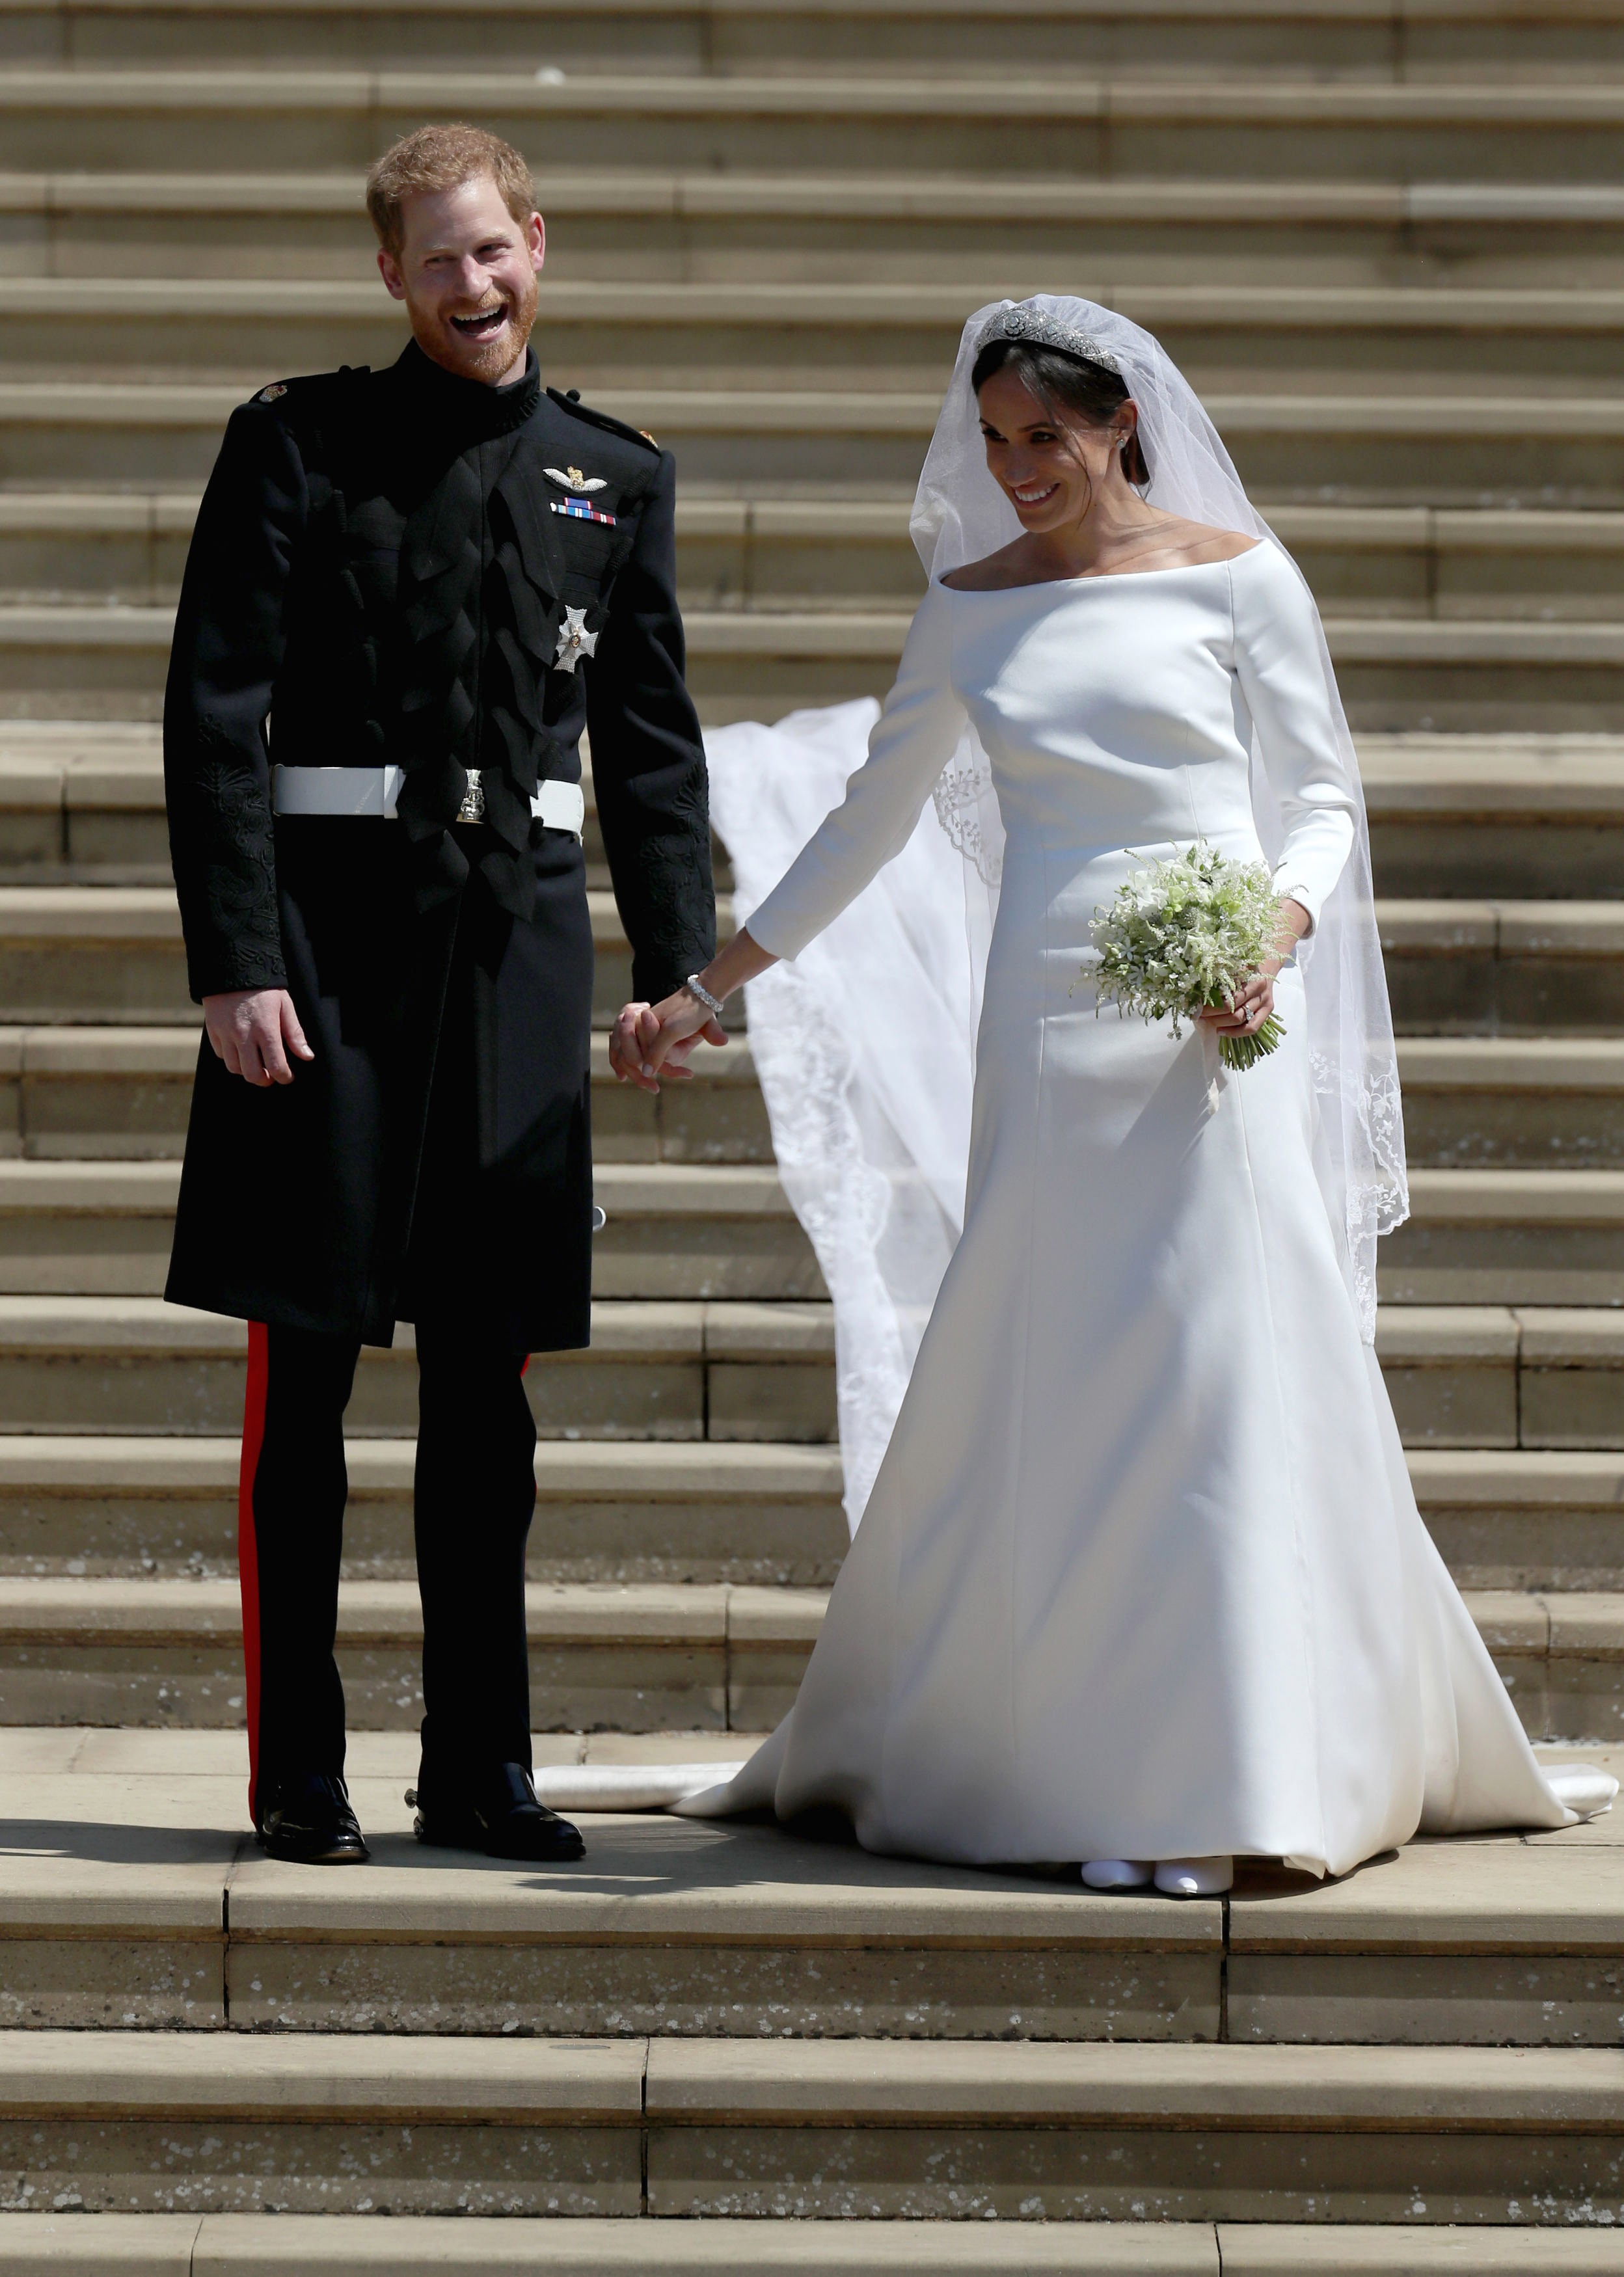 O casamento do Príncipe Harry com a atriz e duquesa Meghan Markle em maio de 2018 (Foto: Getty Images)